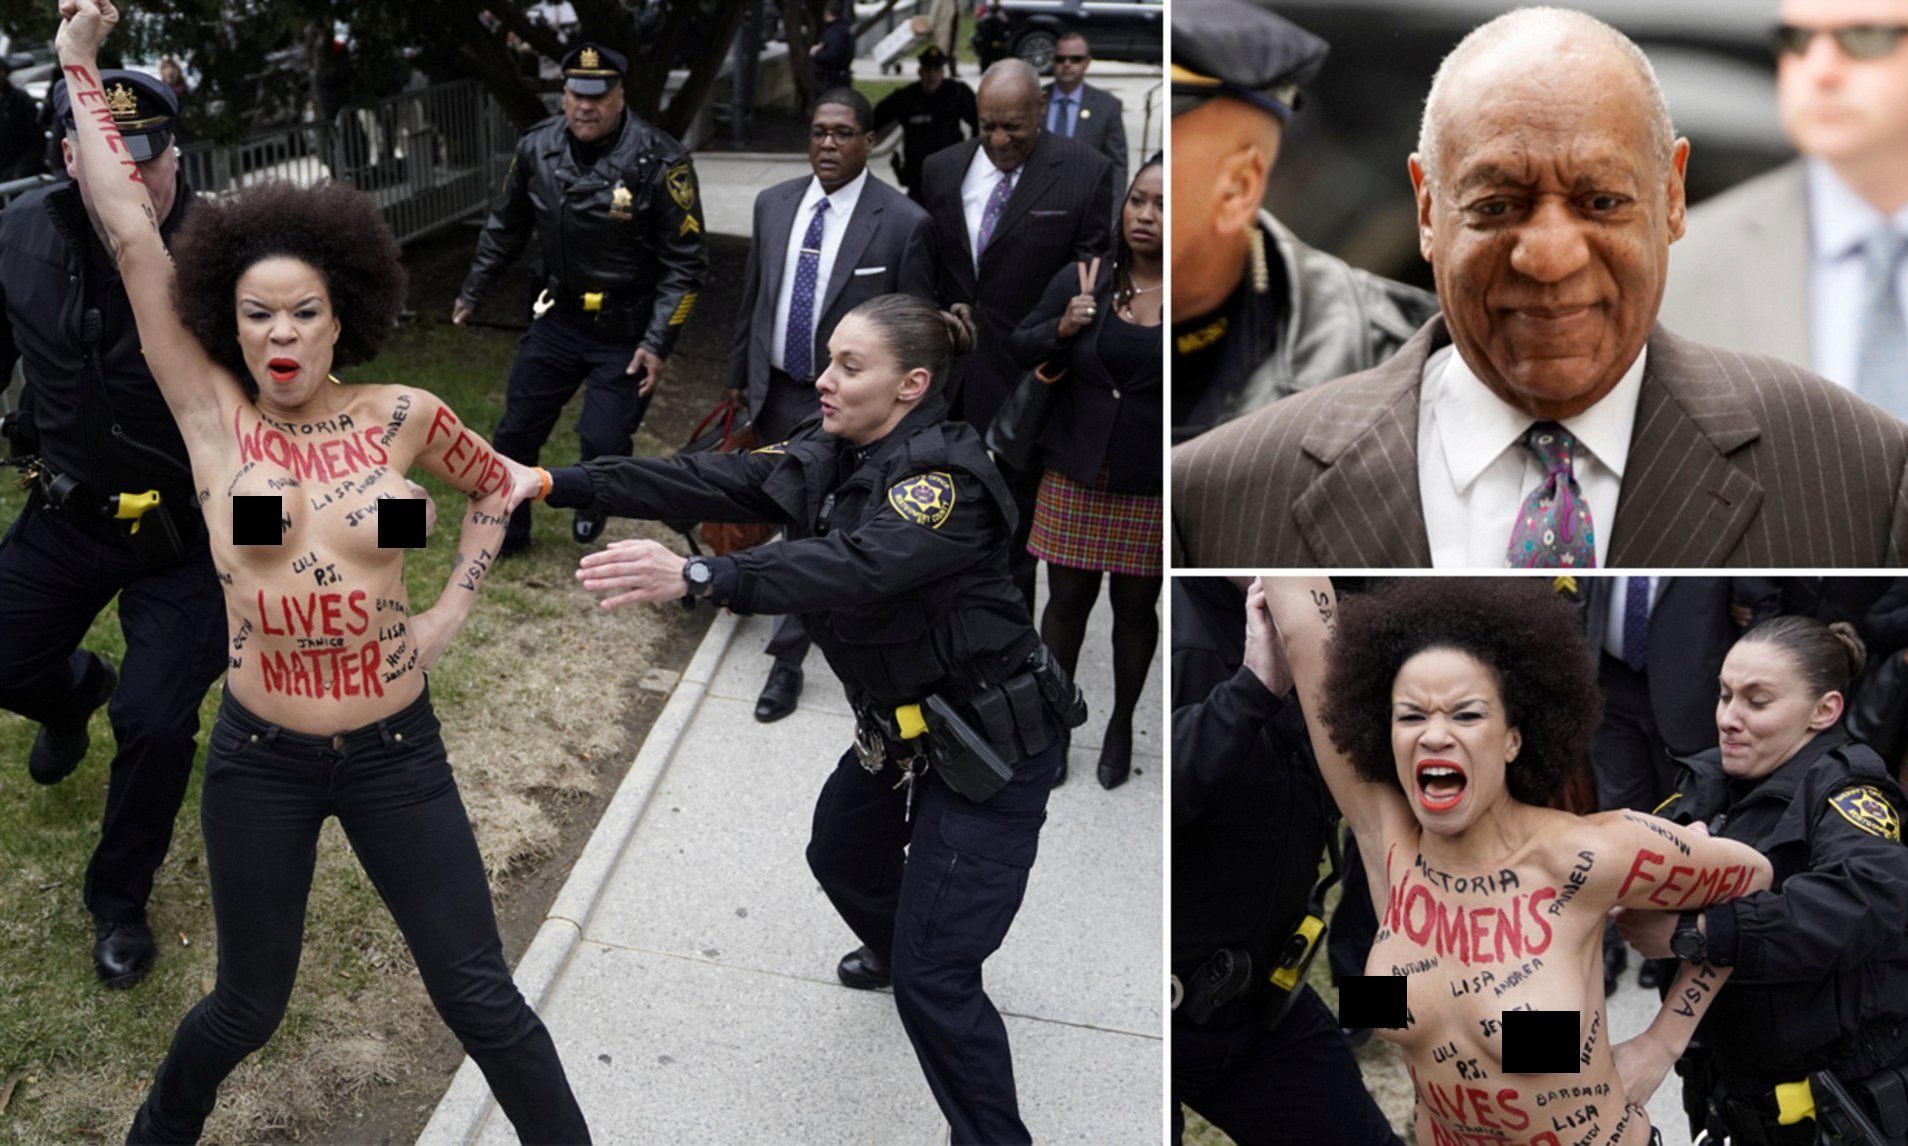 Activista feminista se desnuda y raya su cuerpo para protestar frente al actor Bill Cosby acusado de múltiples violaciones (Video+Fotos)